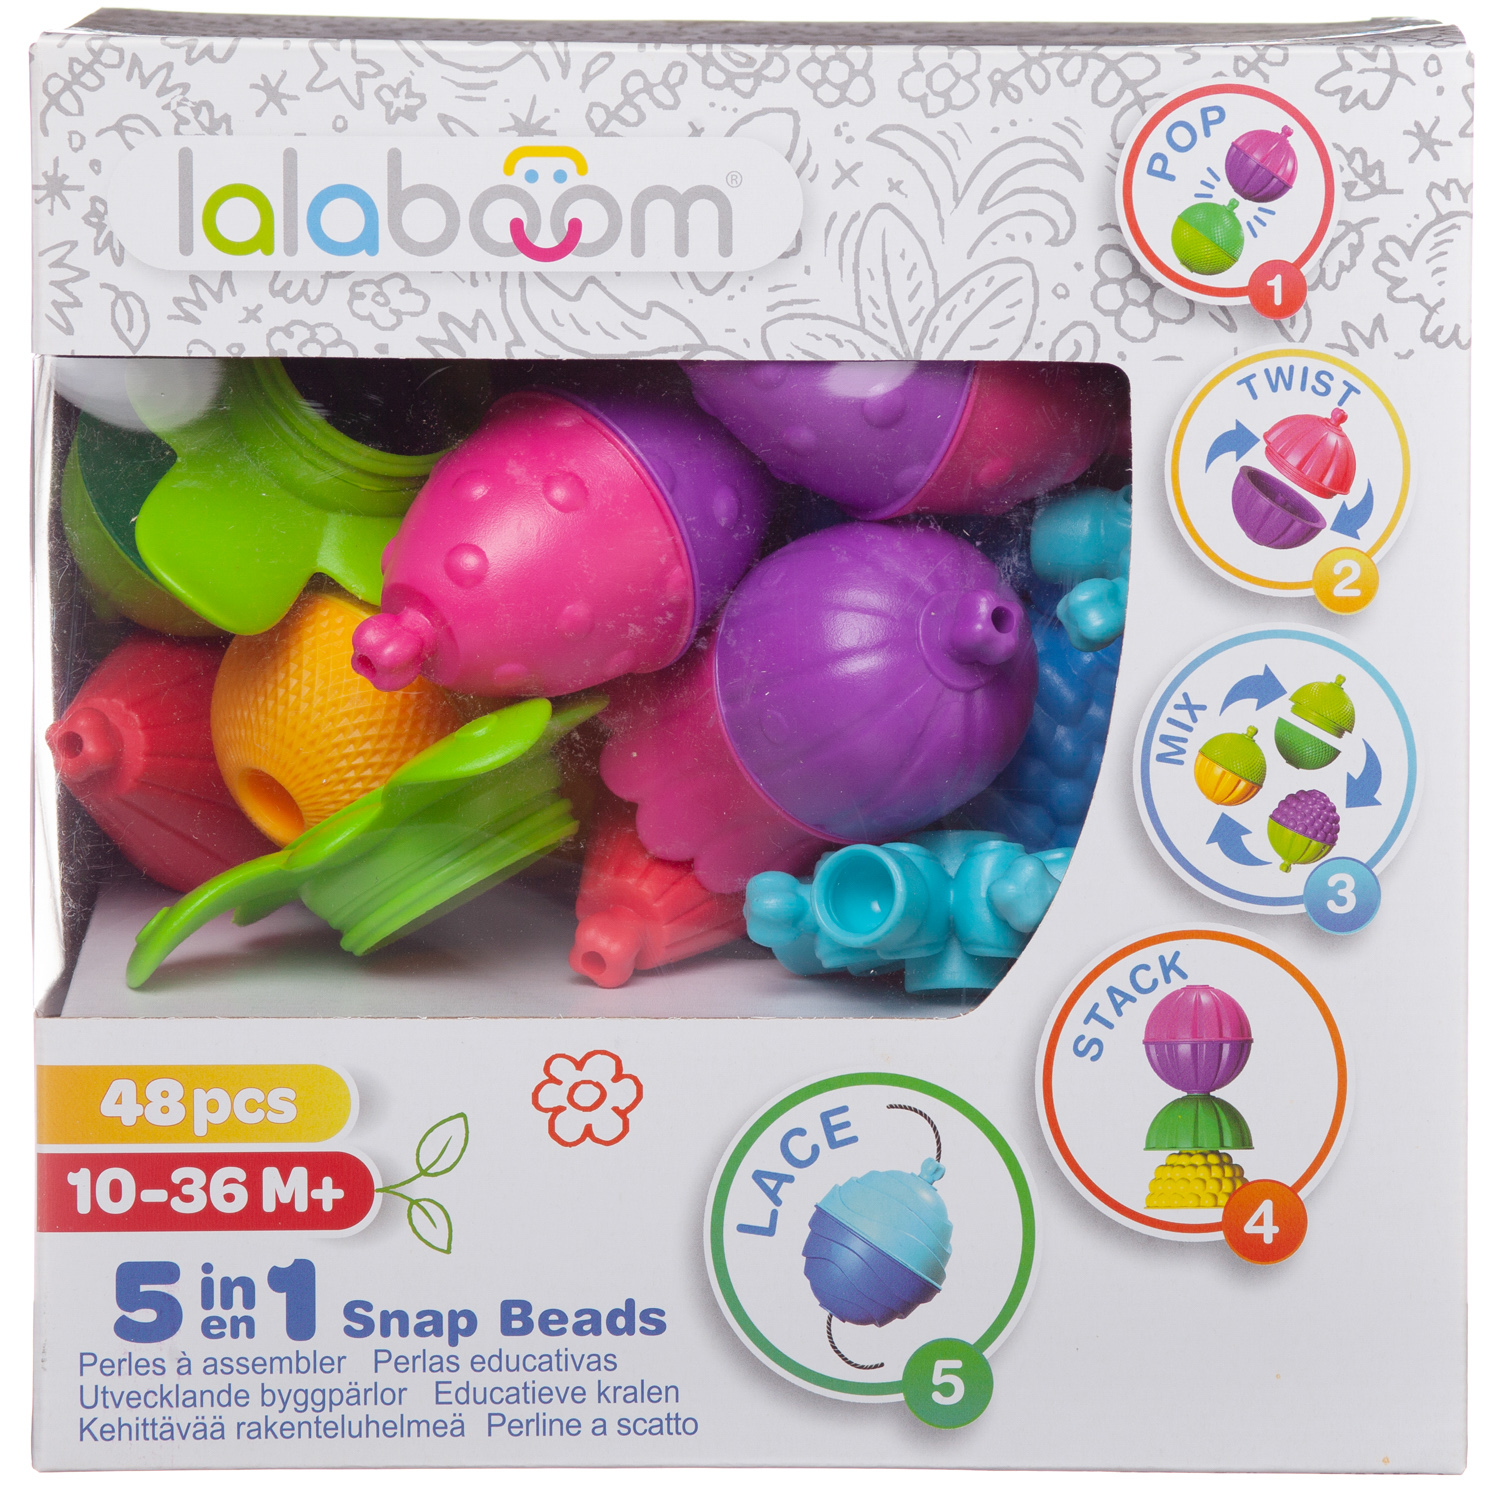 Развивающая игрушка LALABOOM для малыша 48 предметов - фото 2